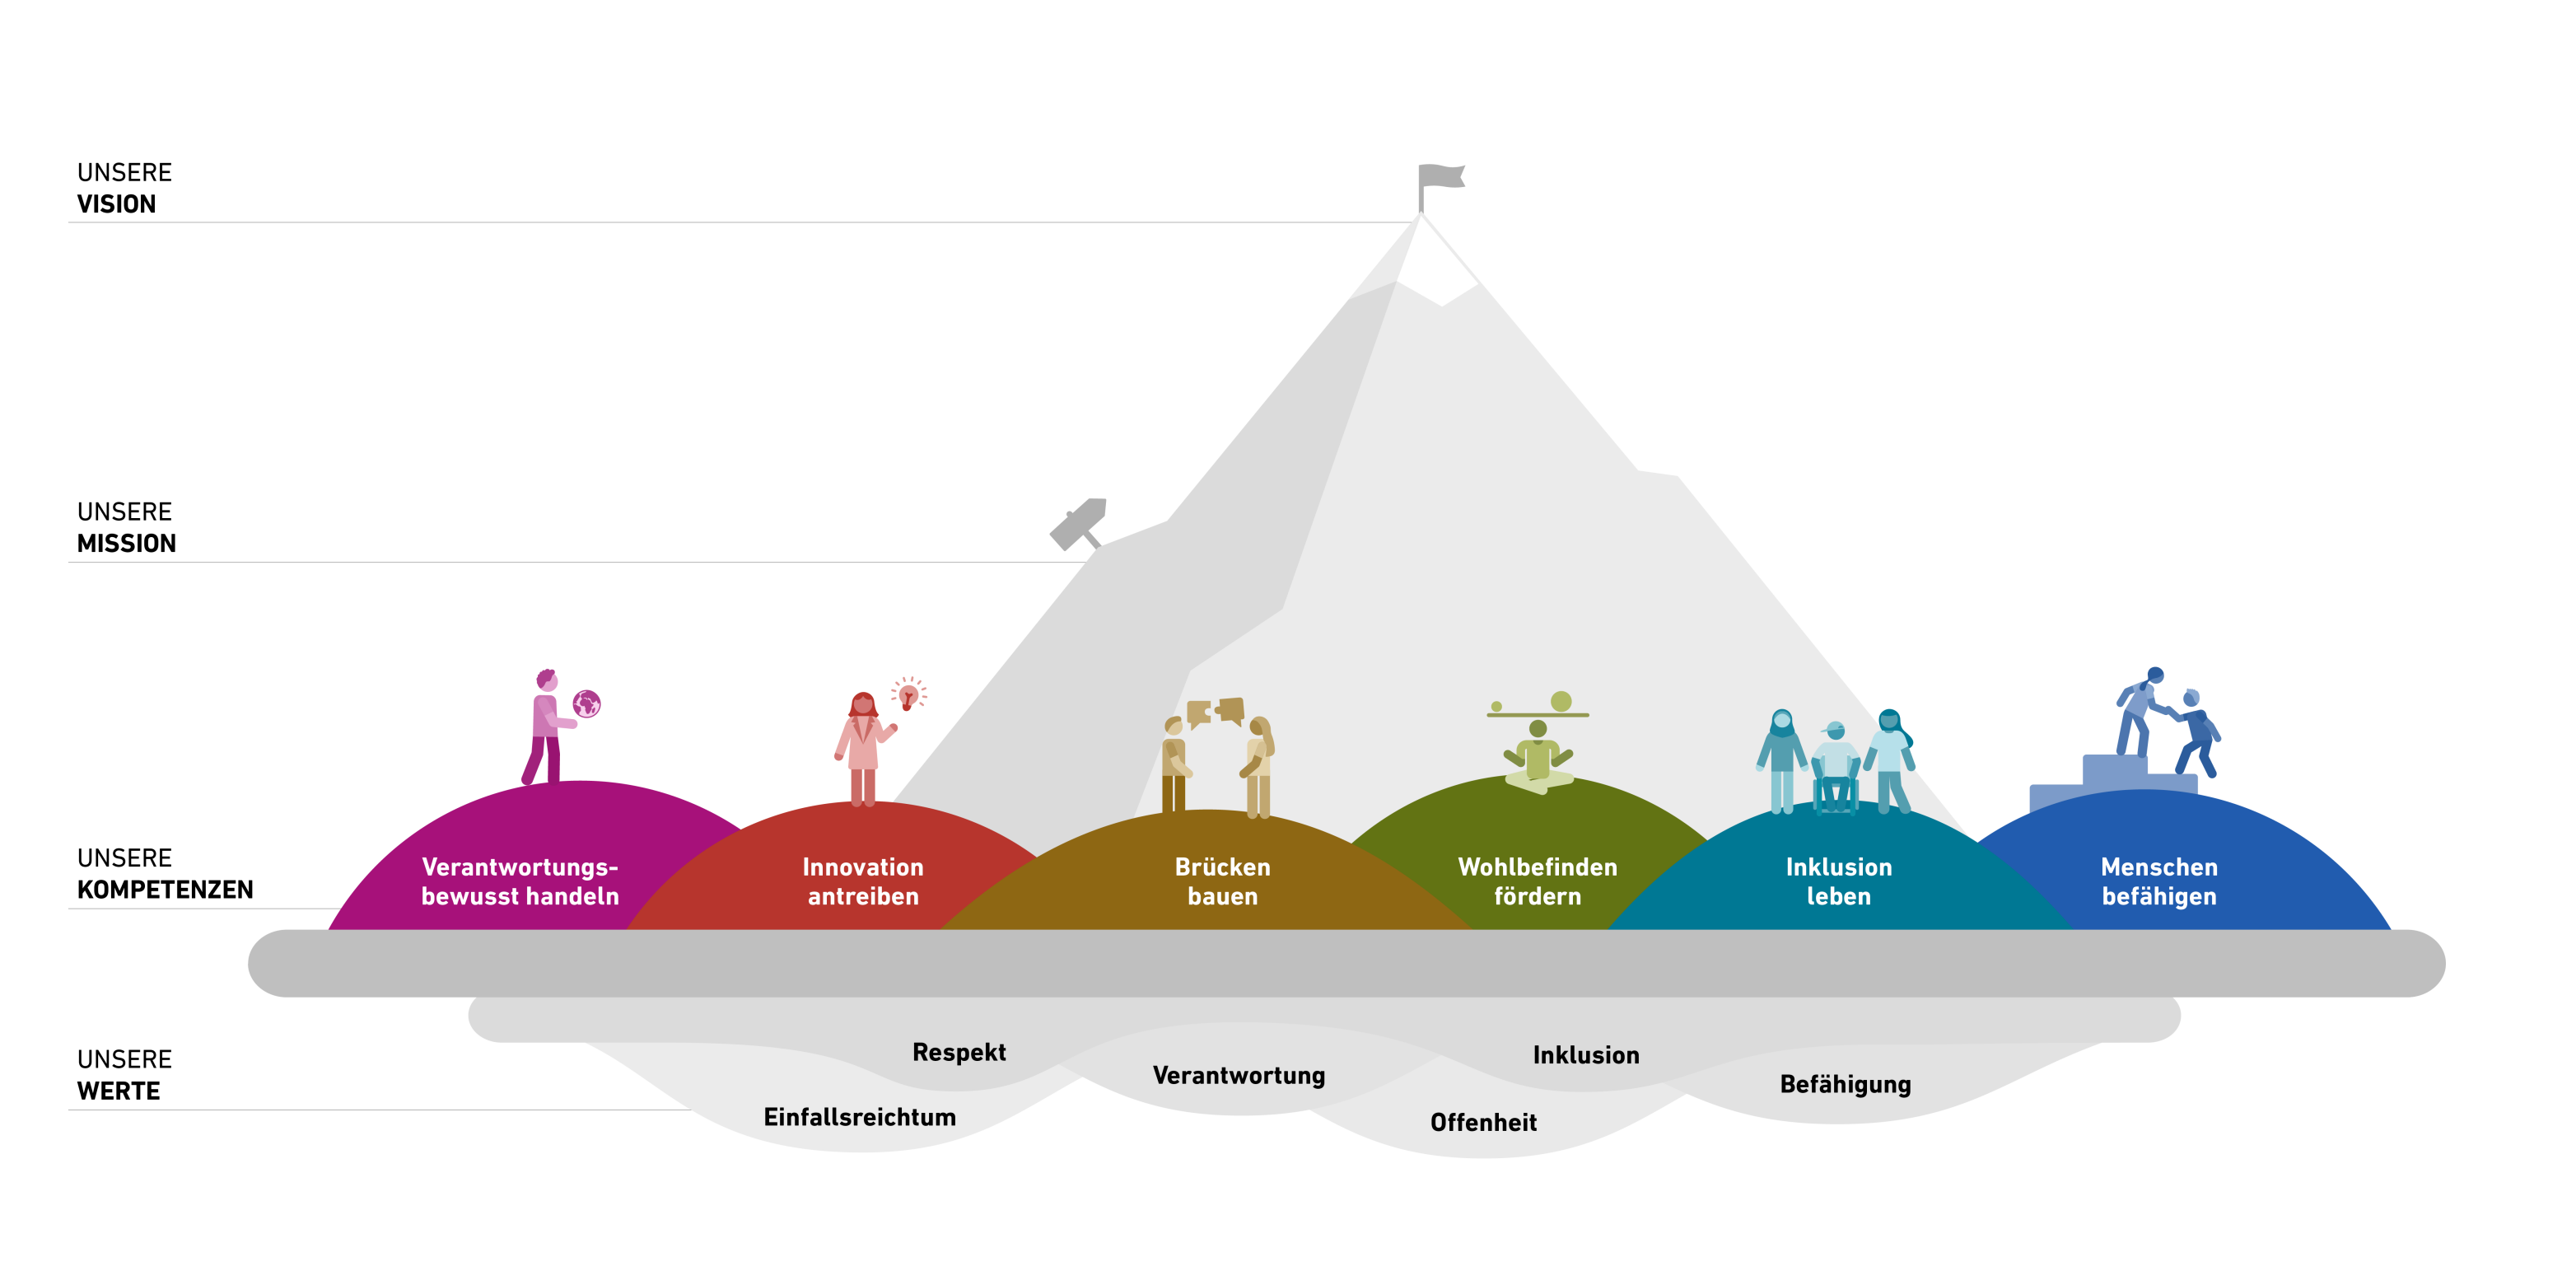 Infografik welche die 6 Kompetenzen zeigt: Verantwortungsbewusst handeln, Innovation antreiben, Brücken bauen, Wohlbefinden fördern, Inklusion leben, Menschen befähigen.